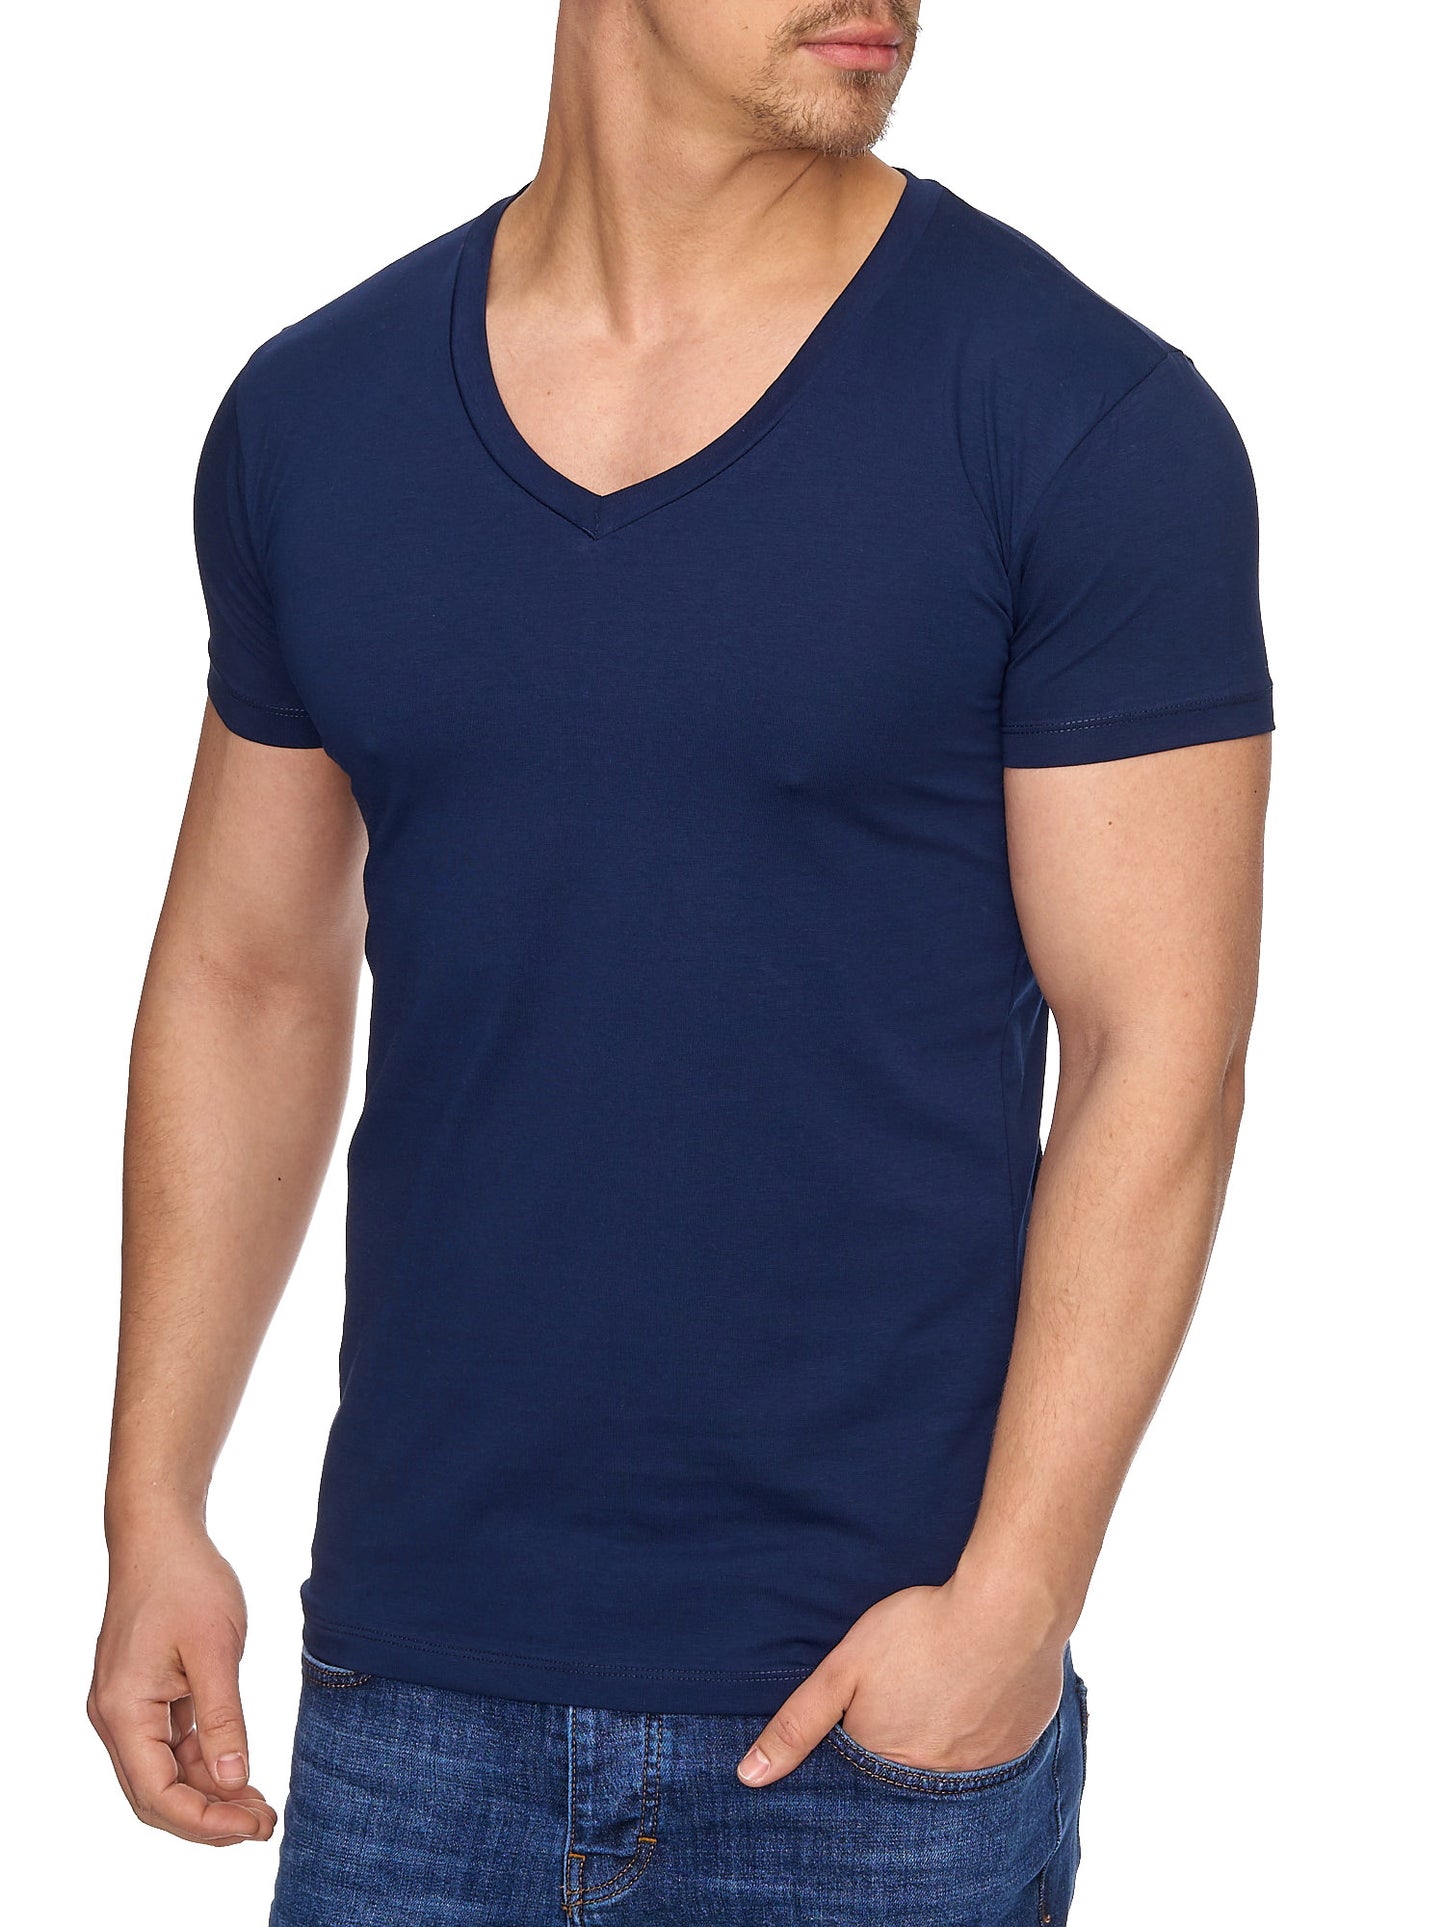 Tazzio Herren T-Shirt mit V-Ausschnitt 17100